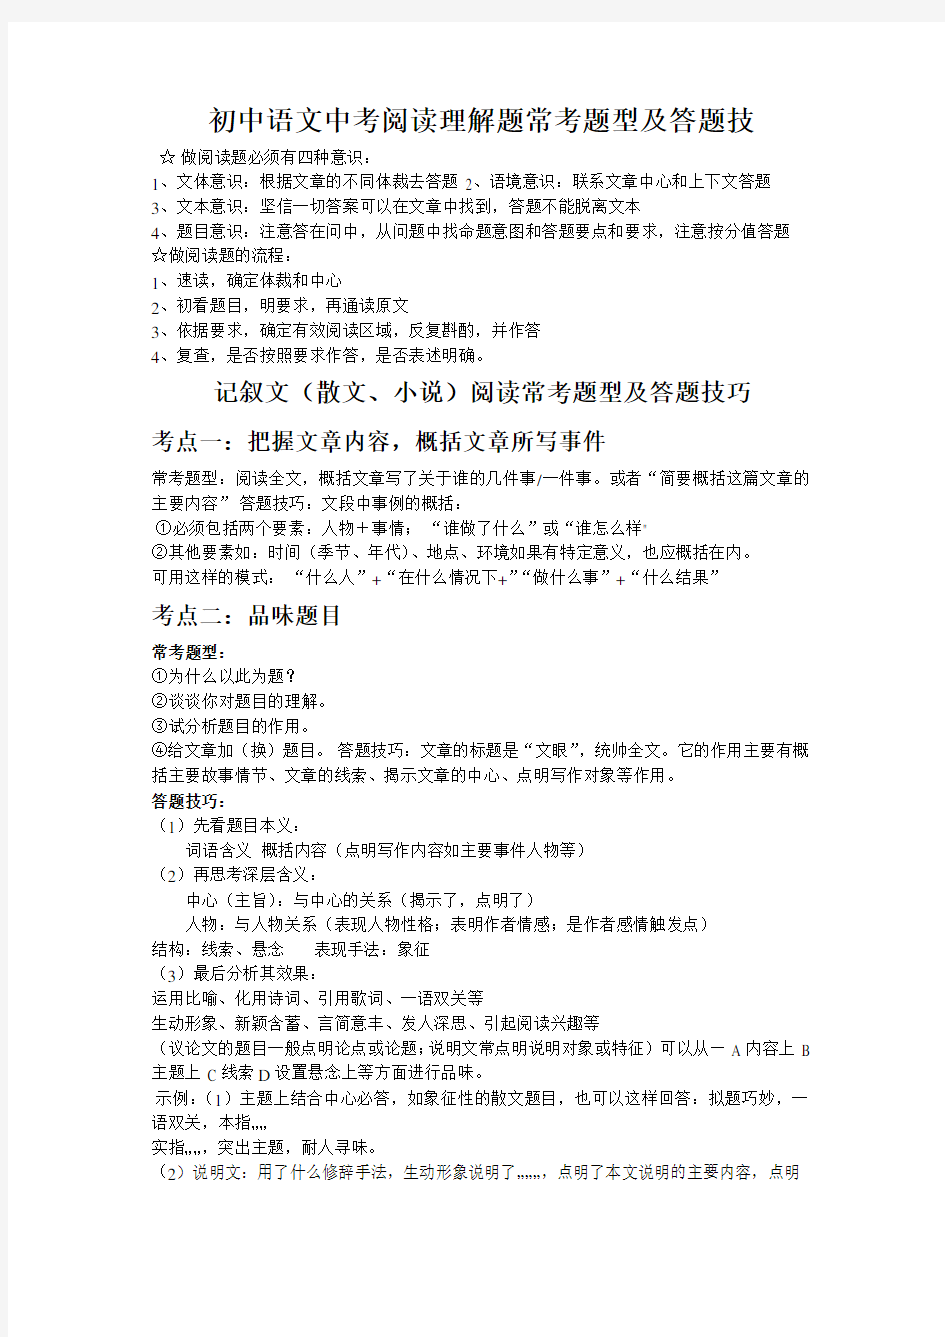 (完整)初中语文中考阅读理解题常考题型及答题技巧